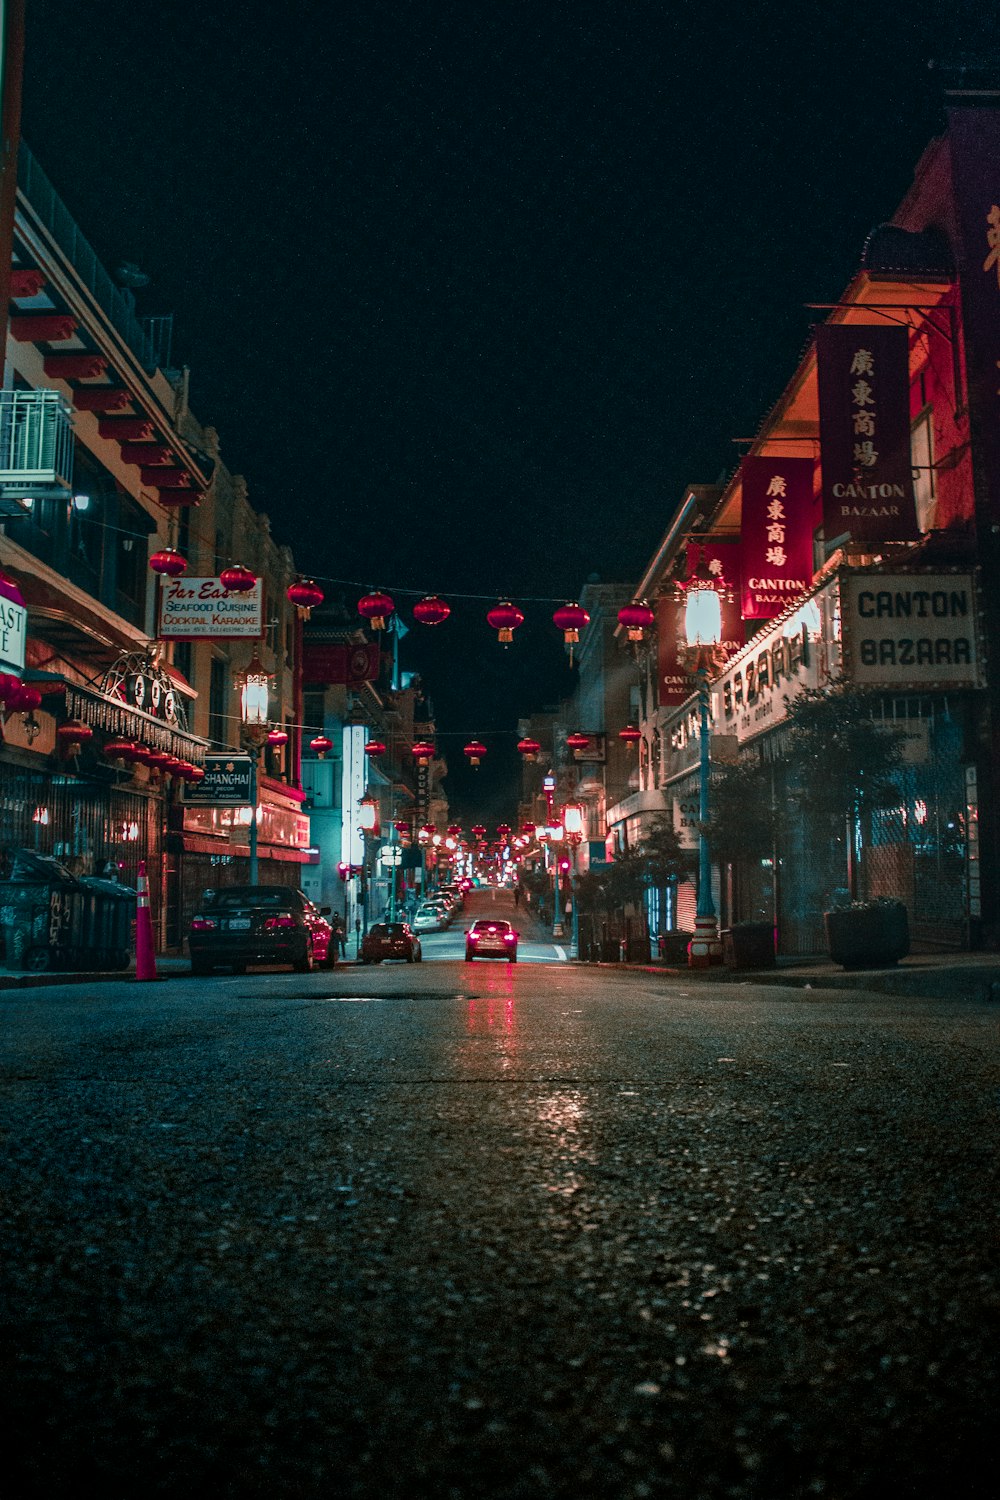 Vetrina del bazar di Canton durante la notte